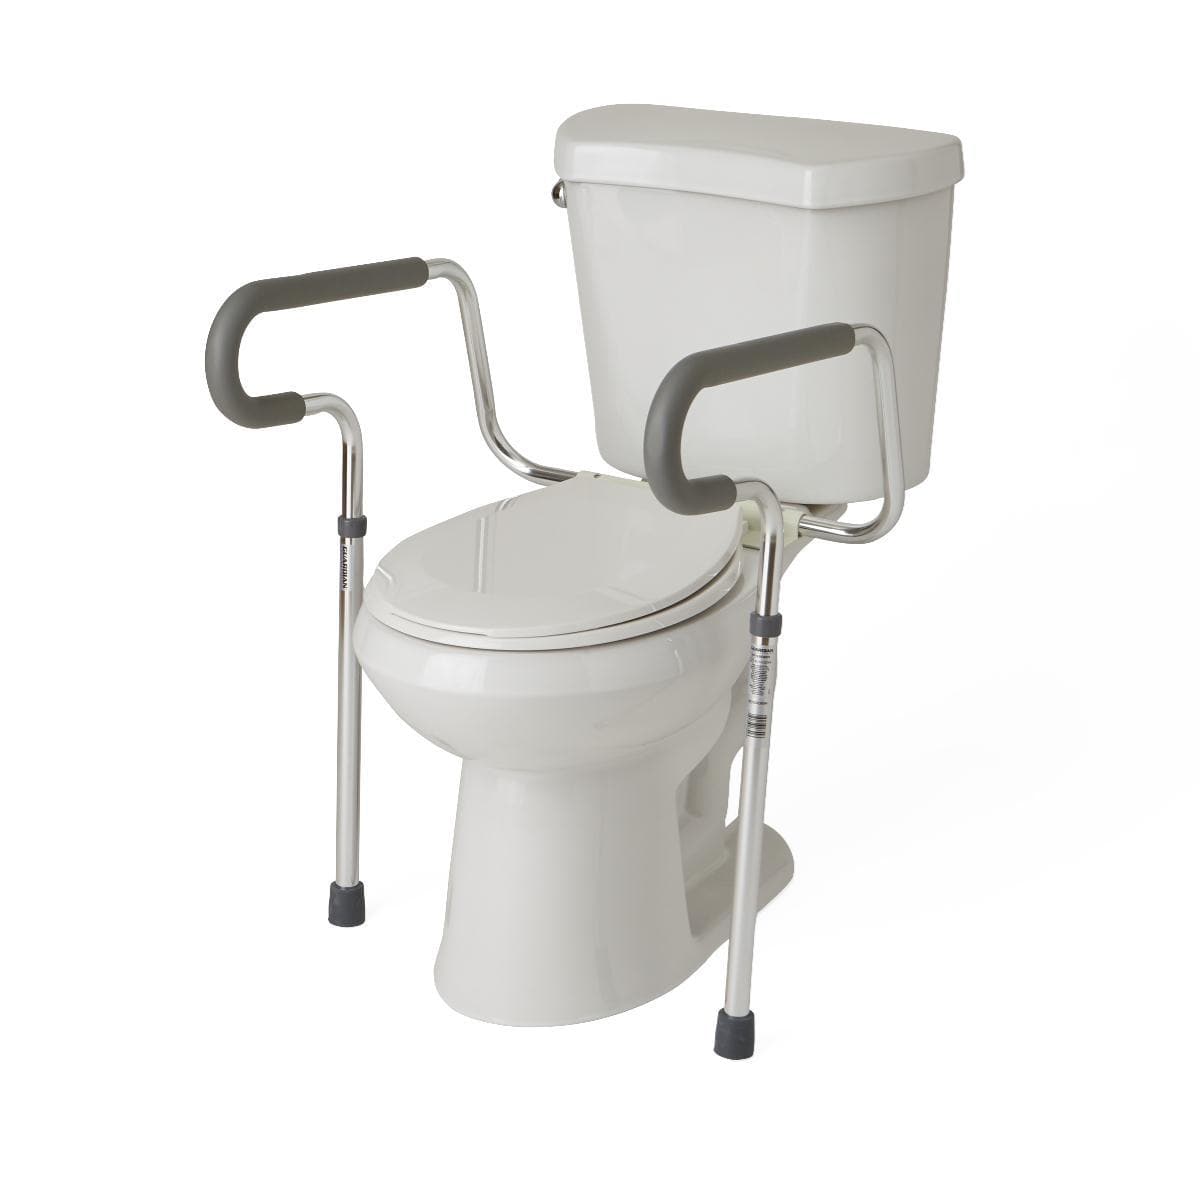 Medline Guardian Toilet Safety Frame - Fall Prevention Toilet Rails - Senior.com Toilet Safety Frames